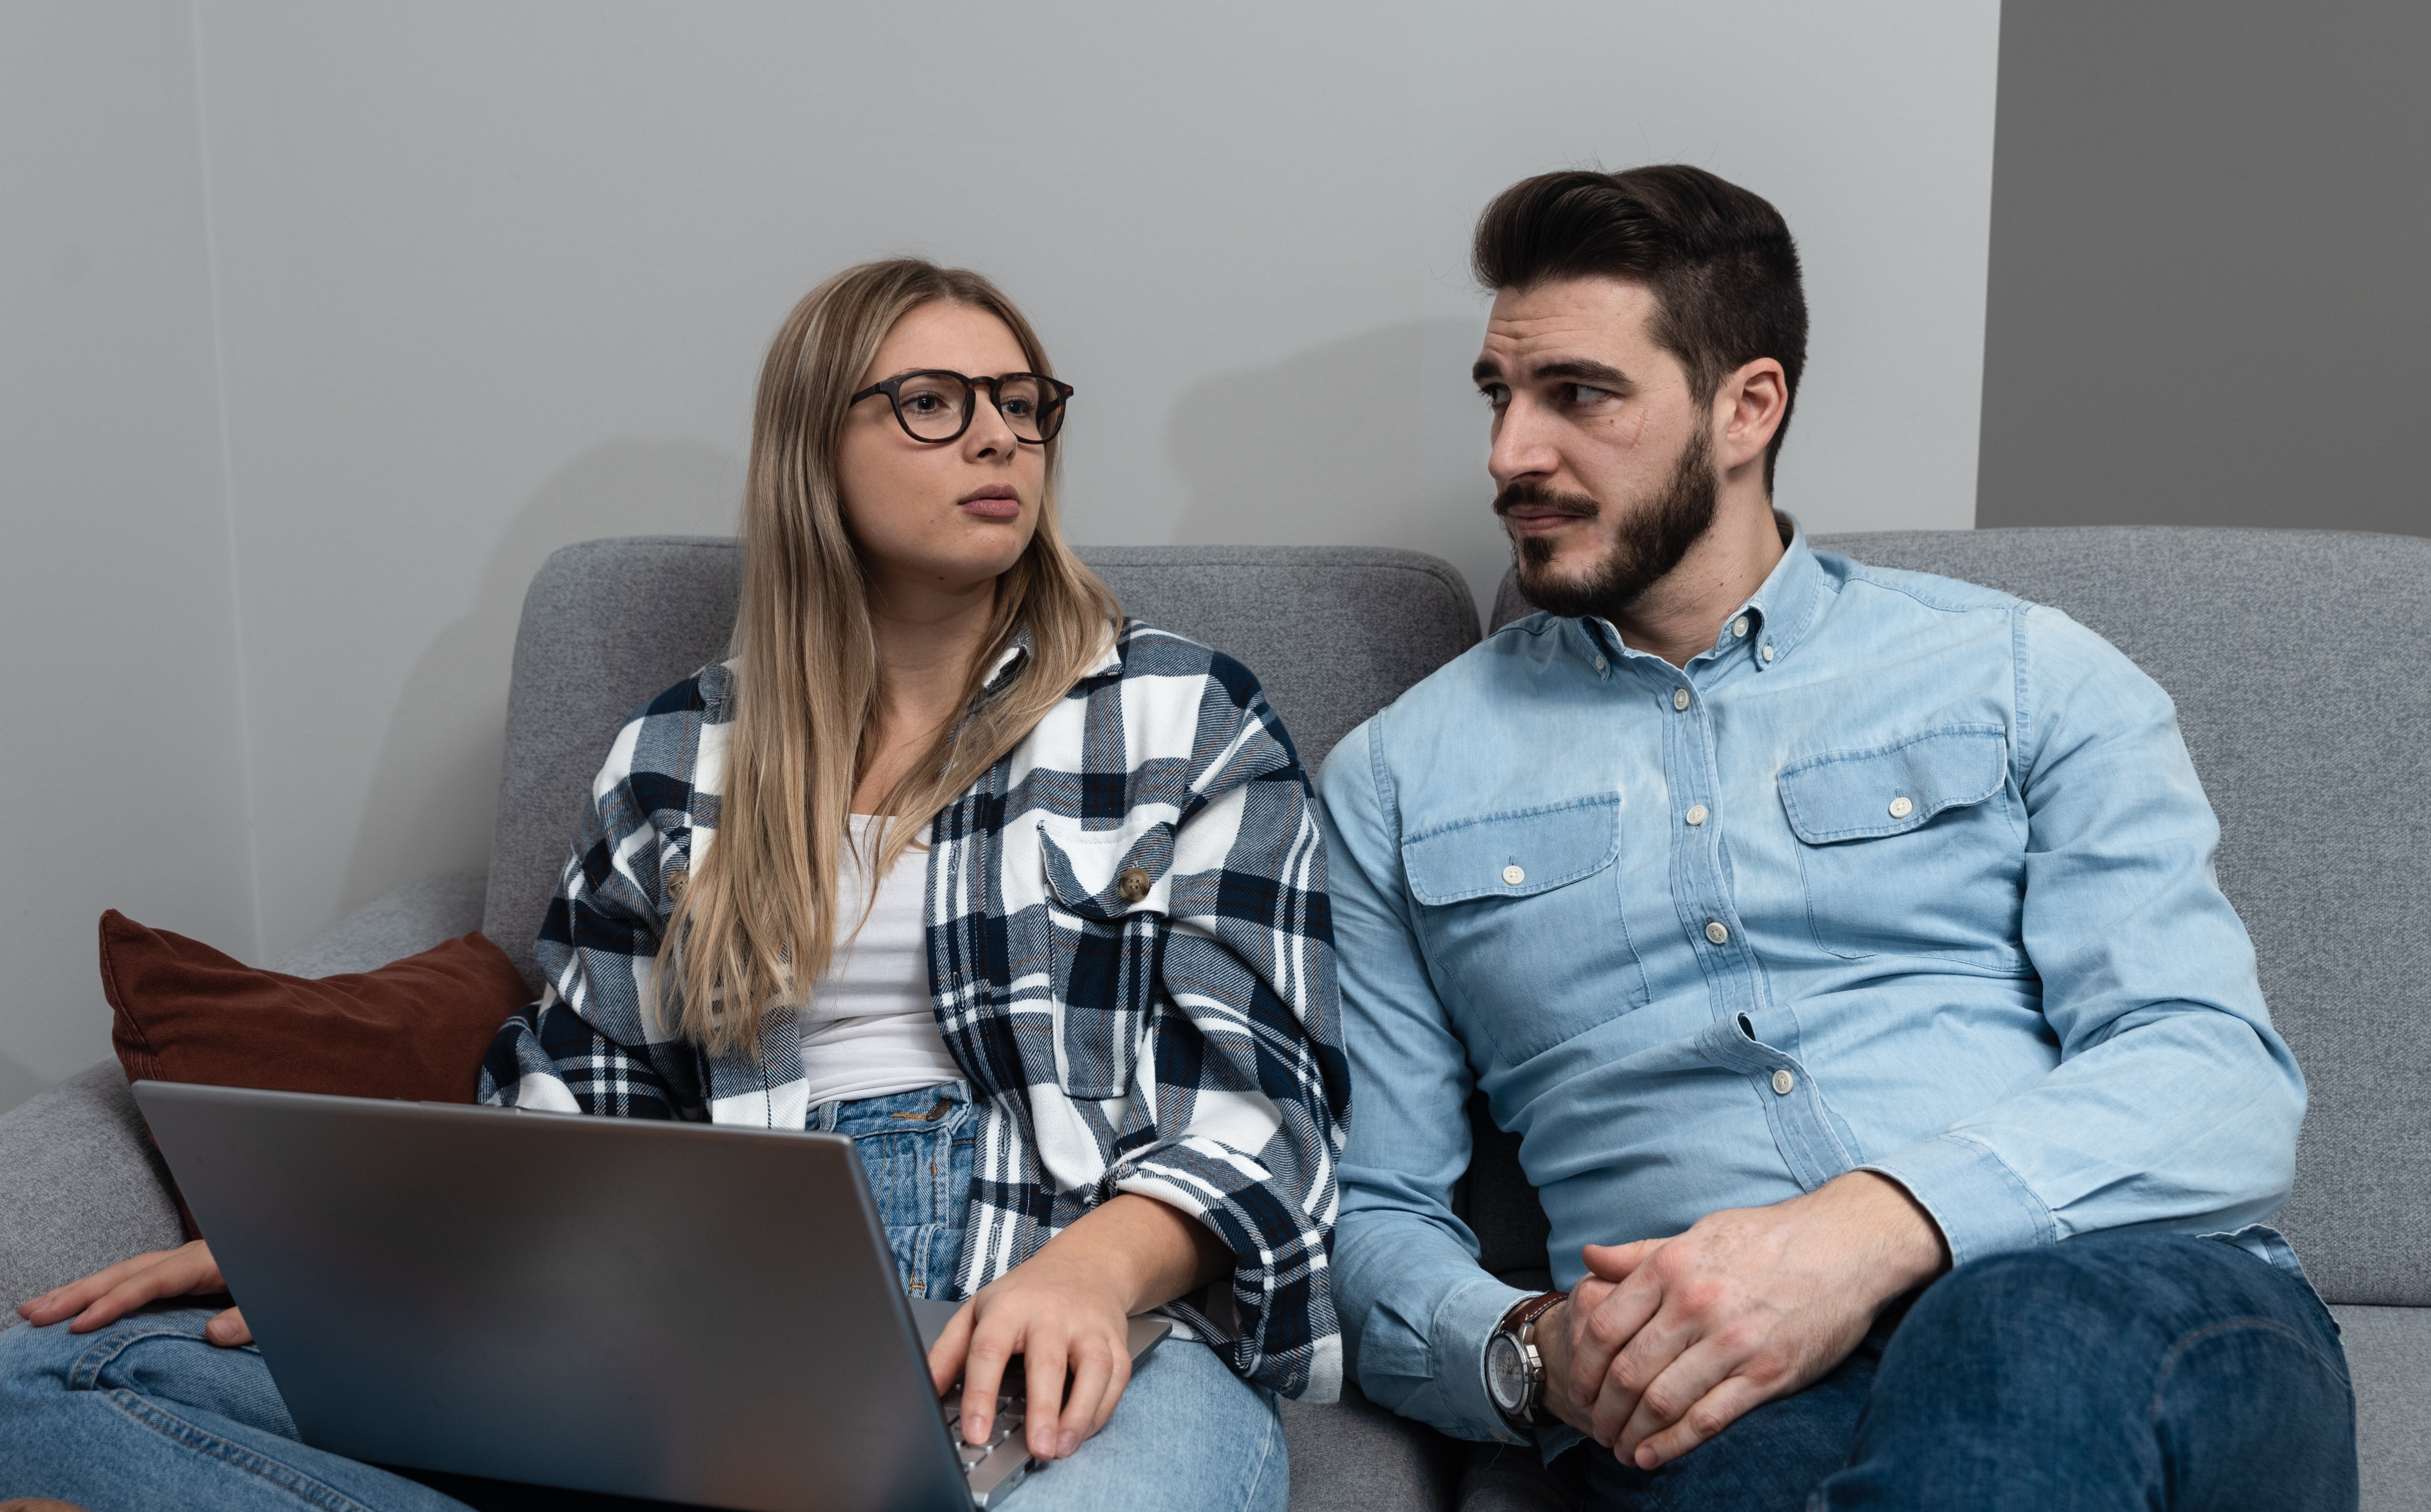 Una pareja sentada discutiendo algo mientras un ordenador portátil está en el regazo de la mujer | Foto: Shutterstock